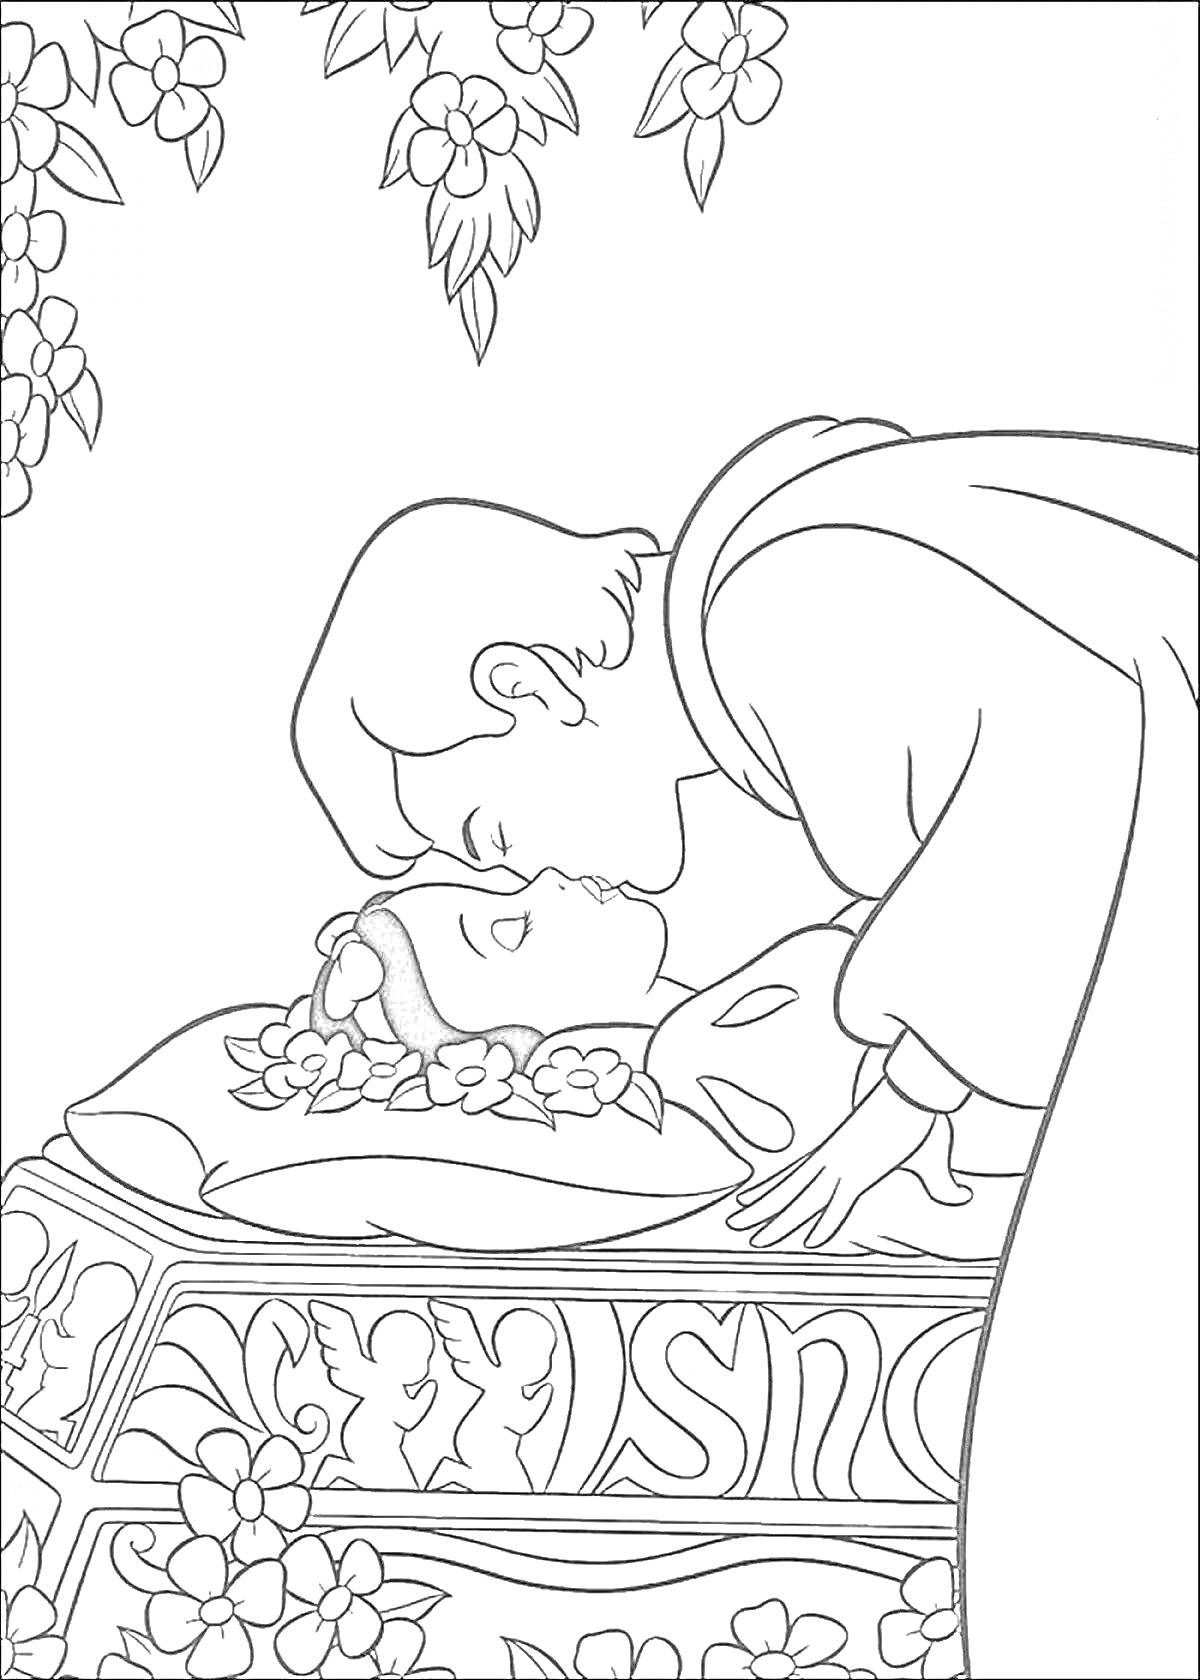 Принц целует Белоснежку, лежащую в гробу, окруженном цветами и украшениями, с ангелами на боковых панелях